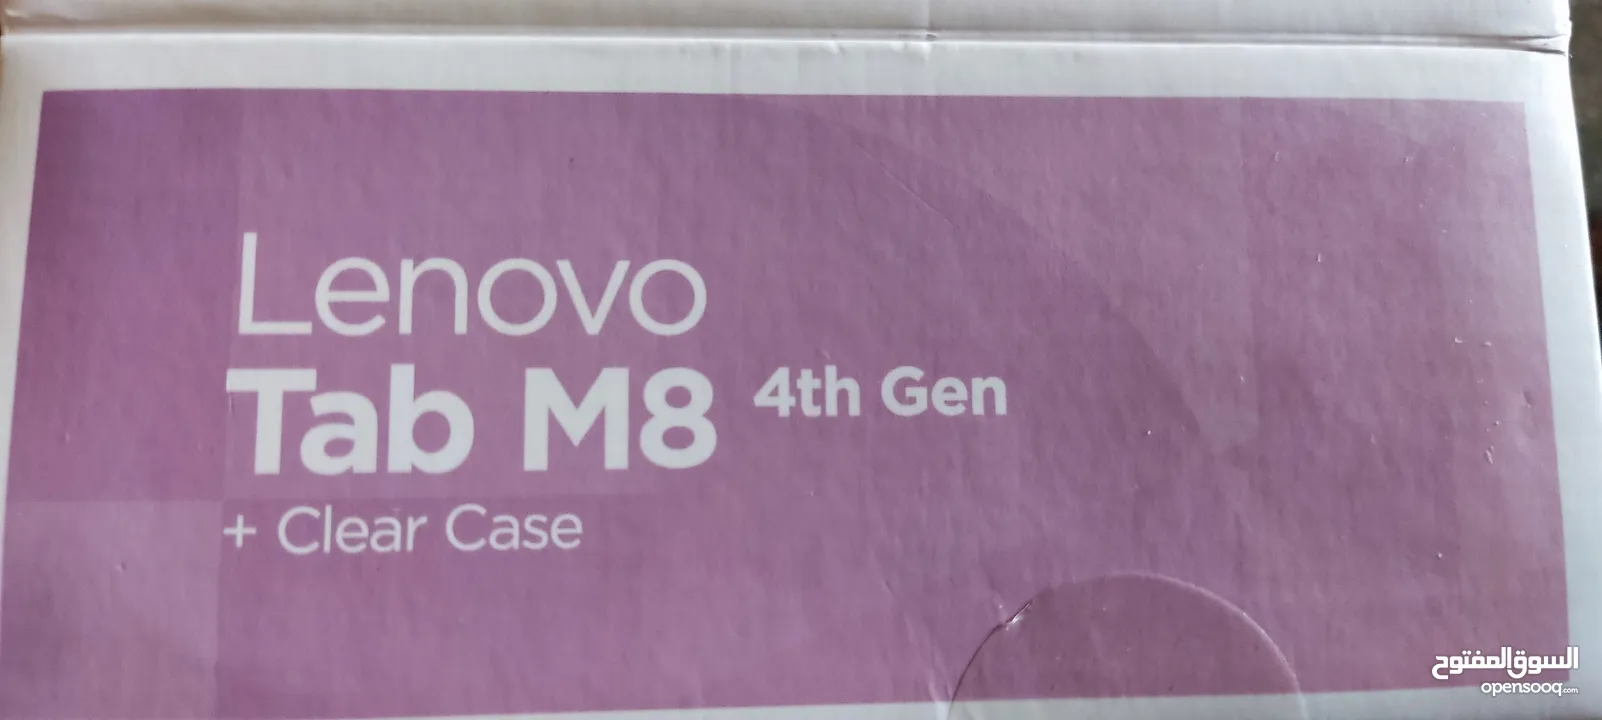 Lenovo tap m8 الجيل الرابع